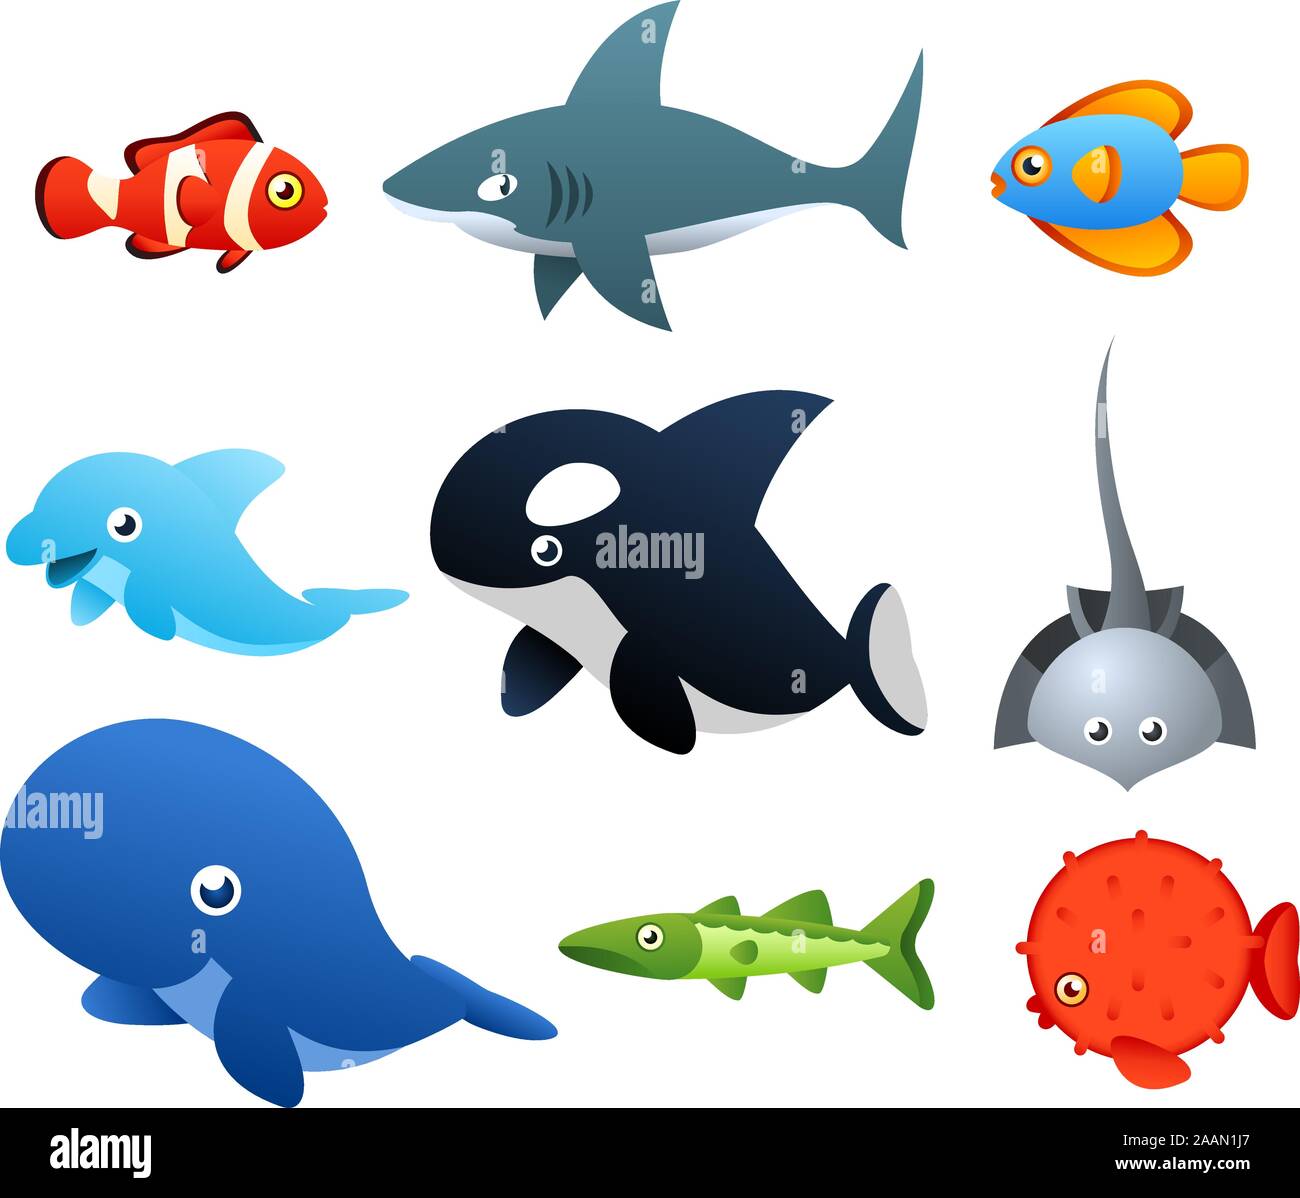 El segundo conjunto de iconos de Vida Marina, con nueve diferentes animales marinos como peces, tiburones, delfines, ballenas ilustración vectorial. Ilustración del Vector